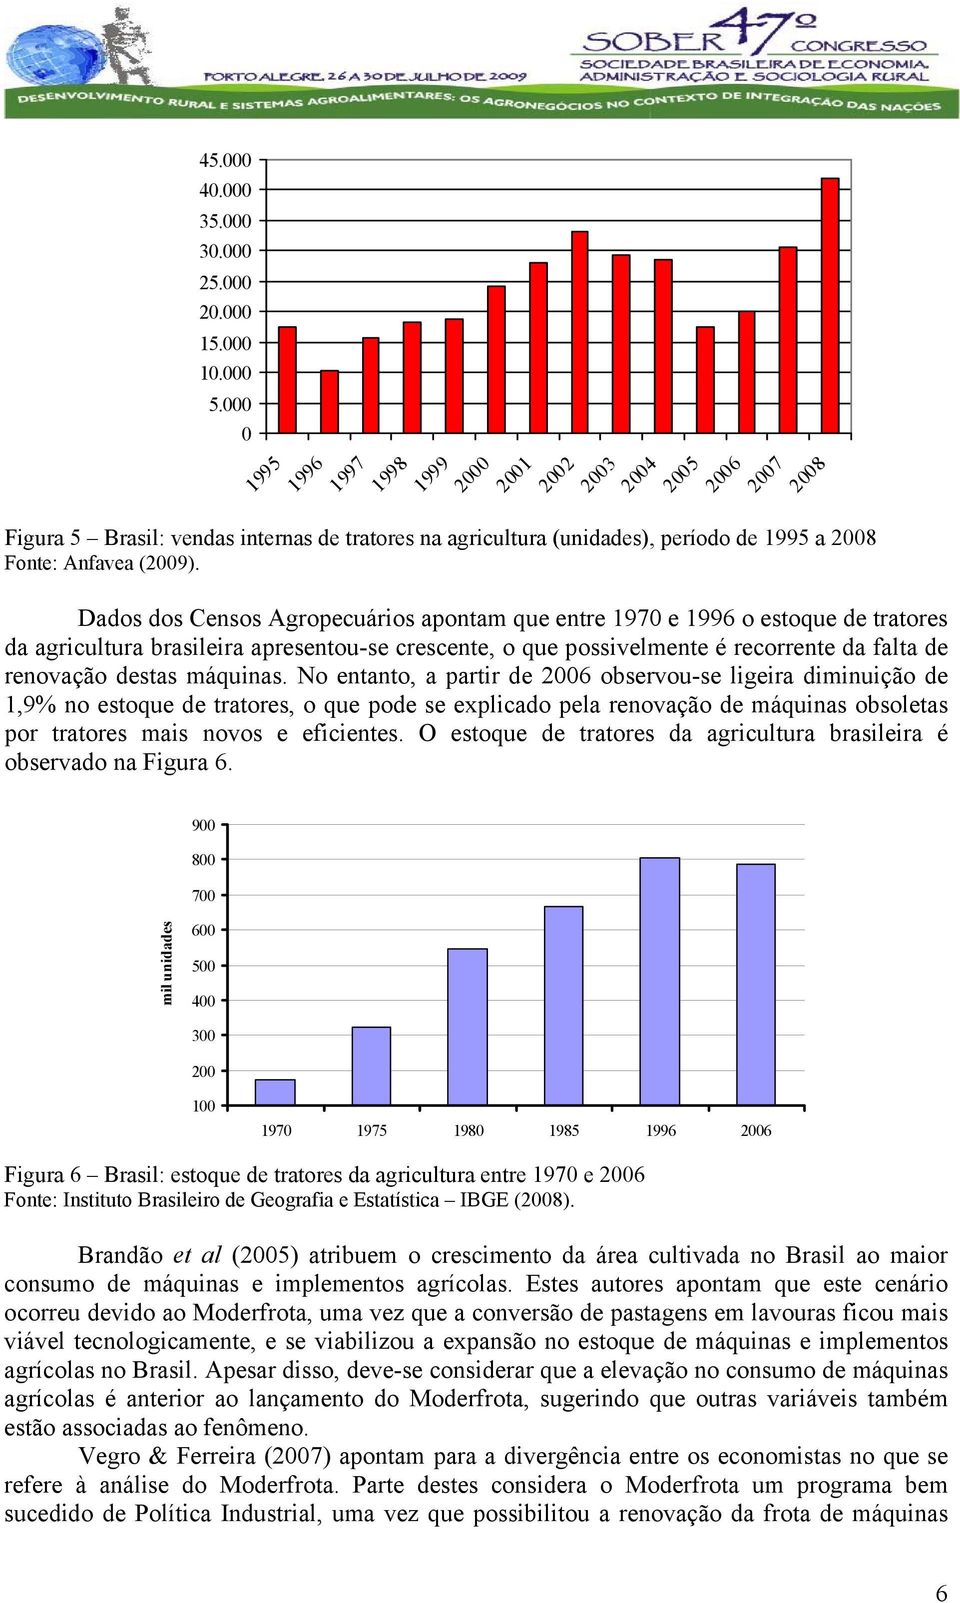 Dados dos Censos Agropecuários apontam que entre 1970 e 1996 o estoque de tratores da agricultura brasileira apresentou-se crescente, o que possivelmente é recorrente da falta de renovação destas